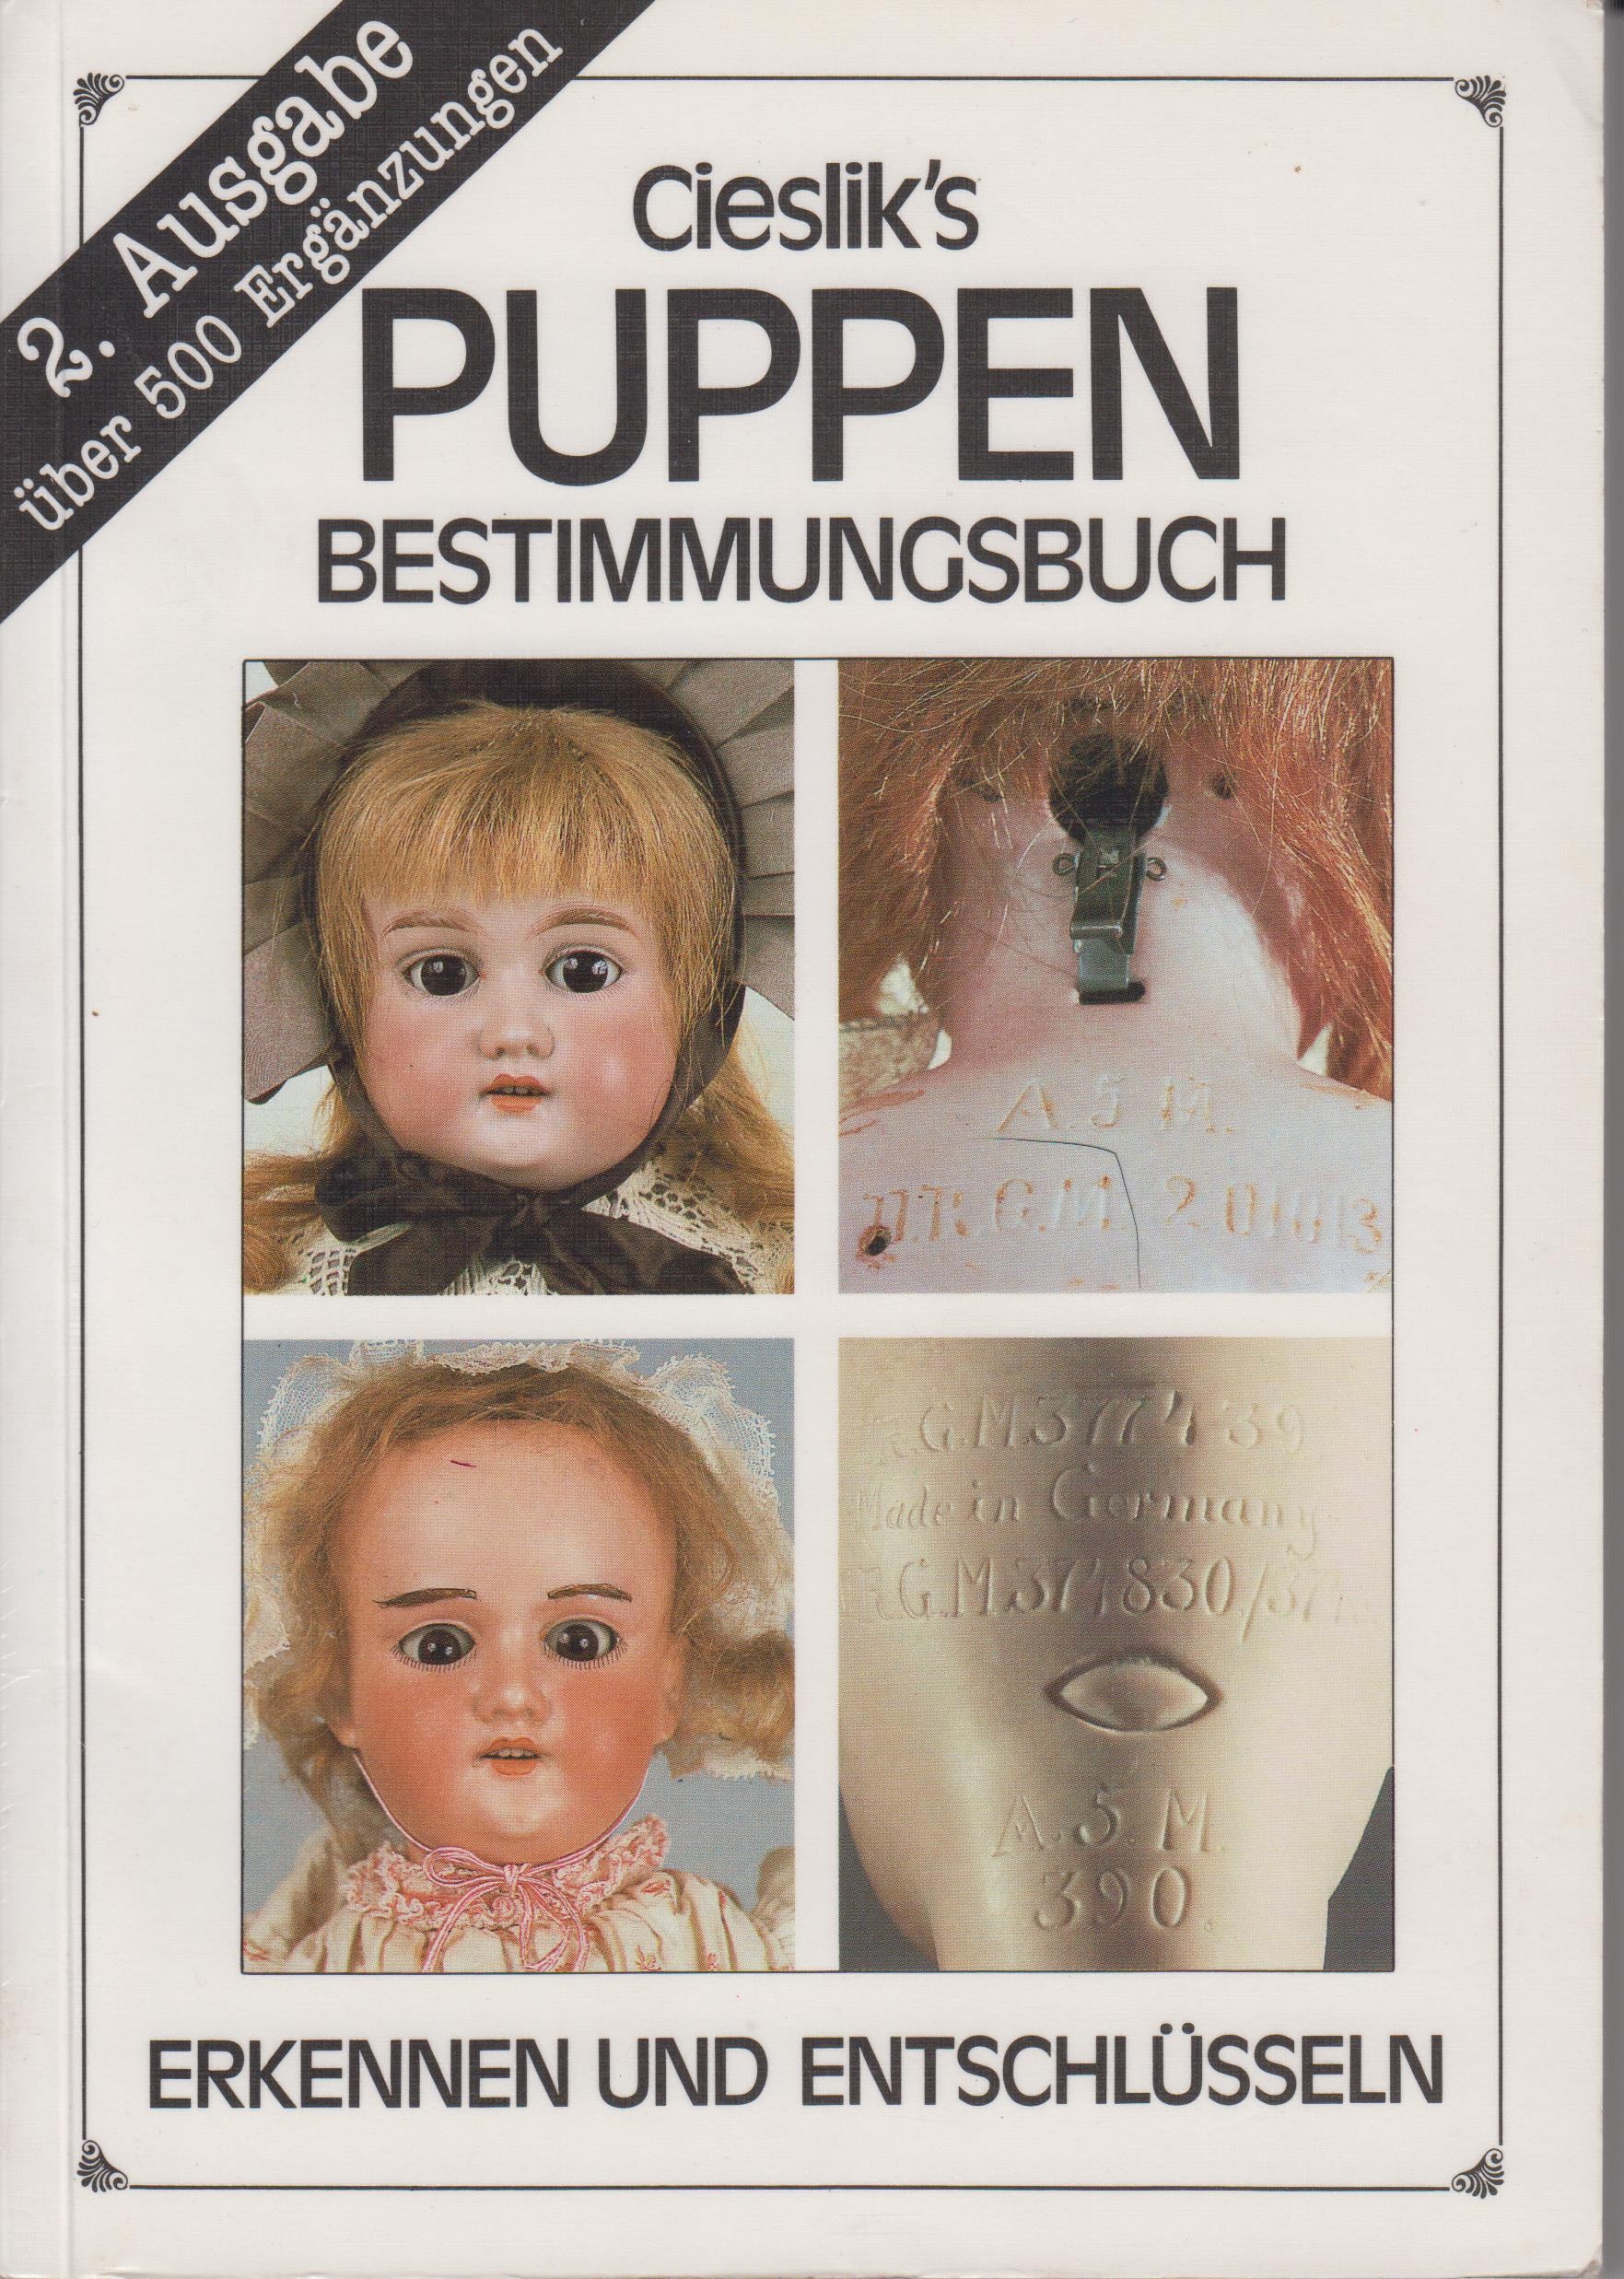 Cieslik’s PUPPEN bestimmungsbuch (Városi Képtár -Hetedhét Játékmúzeum, Székesfehérvár CC BY-NC-SA)